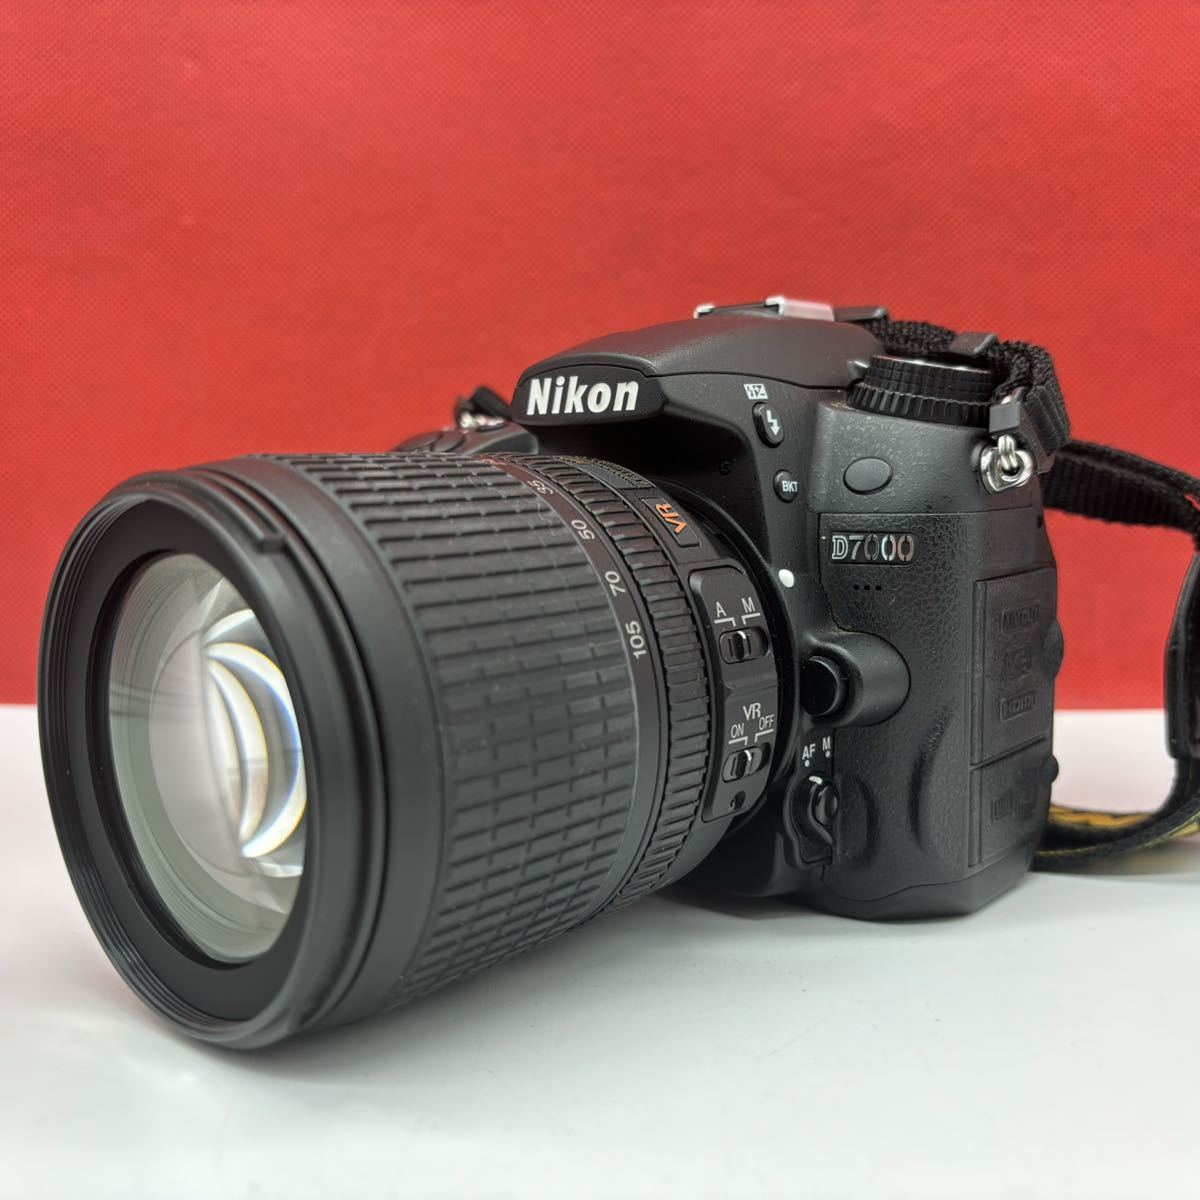 ◆ 【防湿庫保管品】 Nikon D7000 18-105 VR kit デジタル一眼レフカメラ AF-S NIKKOR 18-105mm F3.5G ED DX VR 動作確認済 ニコン_画像2